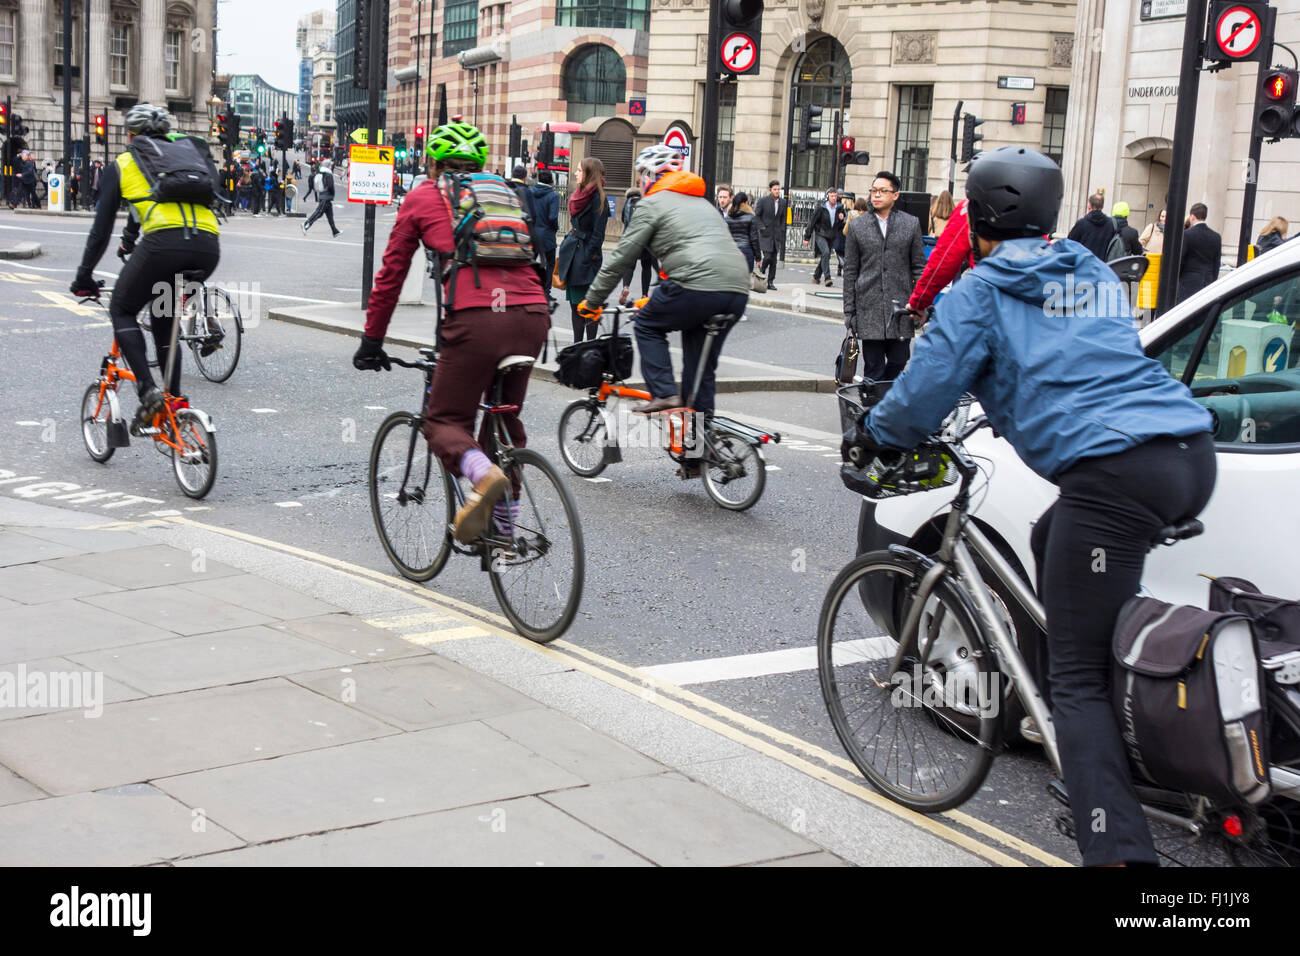 Les cyclistes de rouler à partir de feux de circulation à la sortie de la Banque mondiale, Londres, UK Banque D'Images